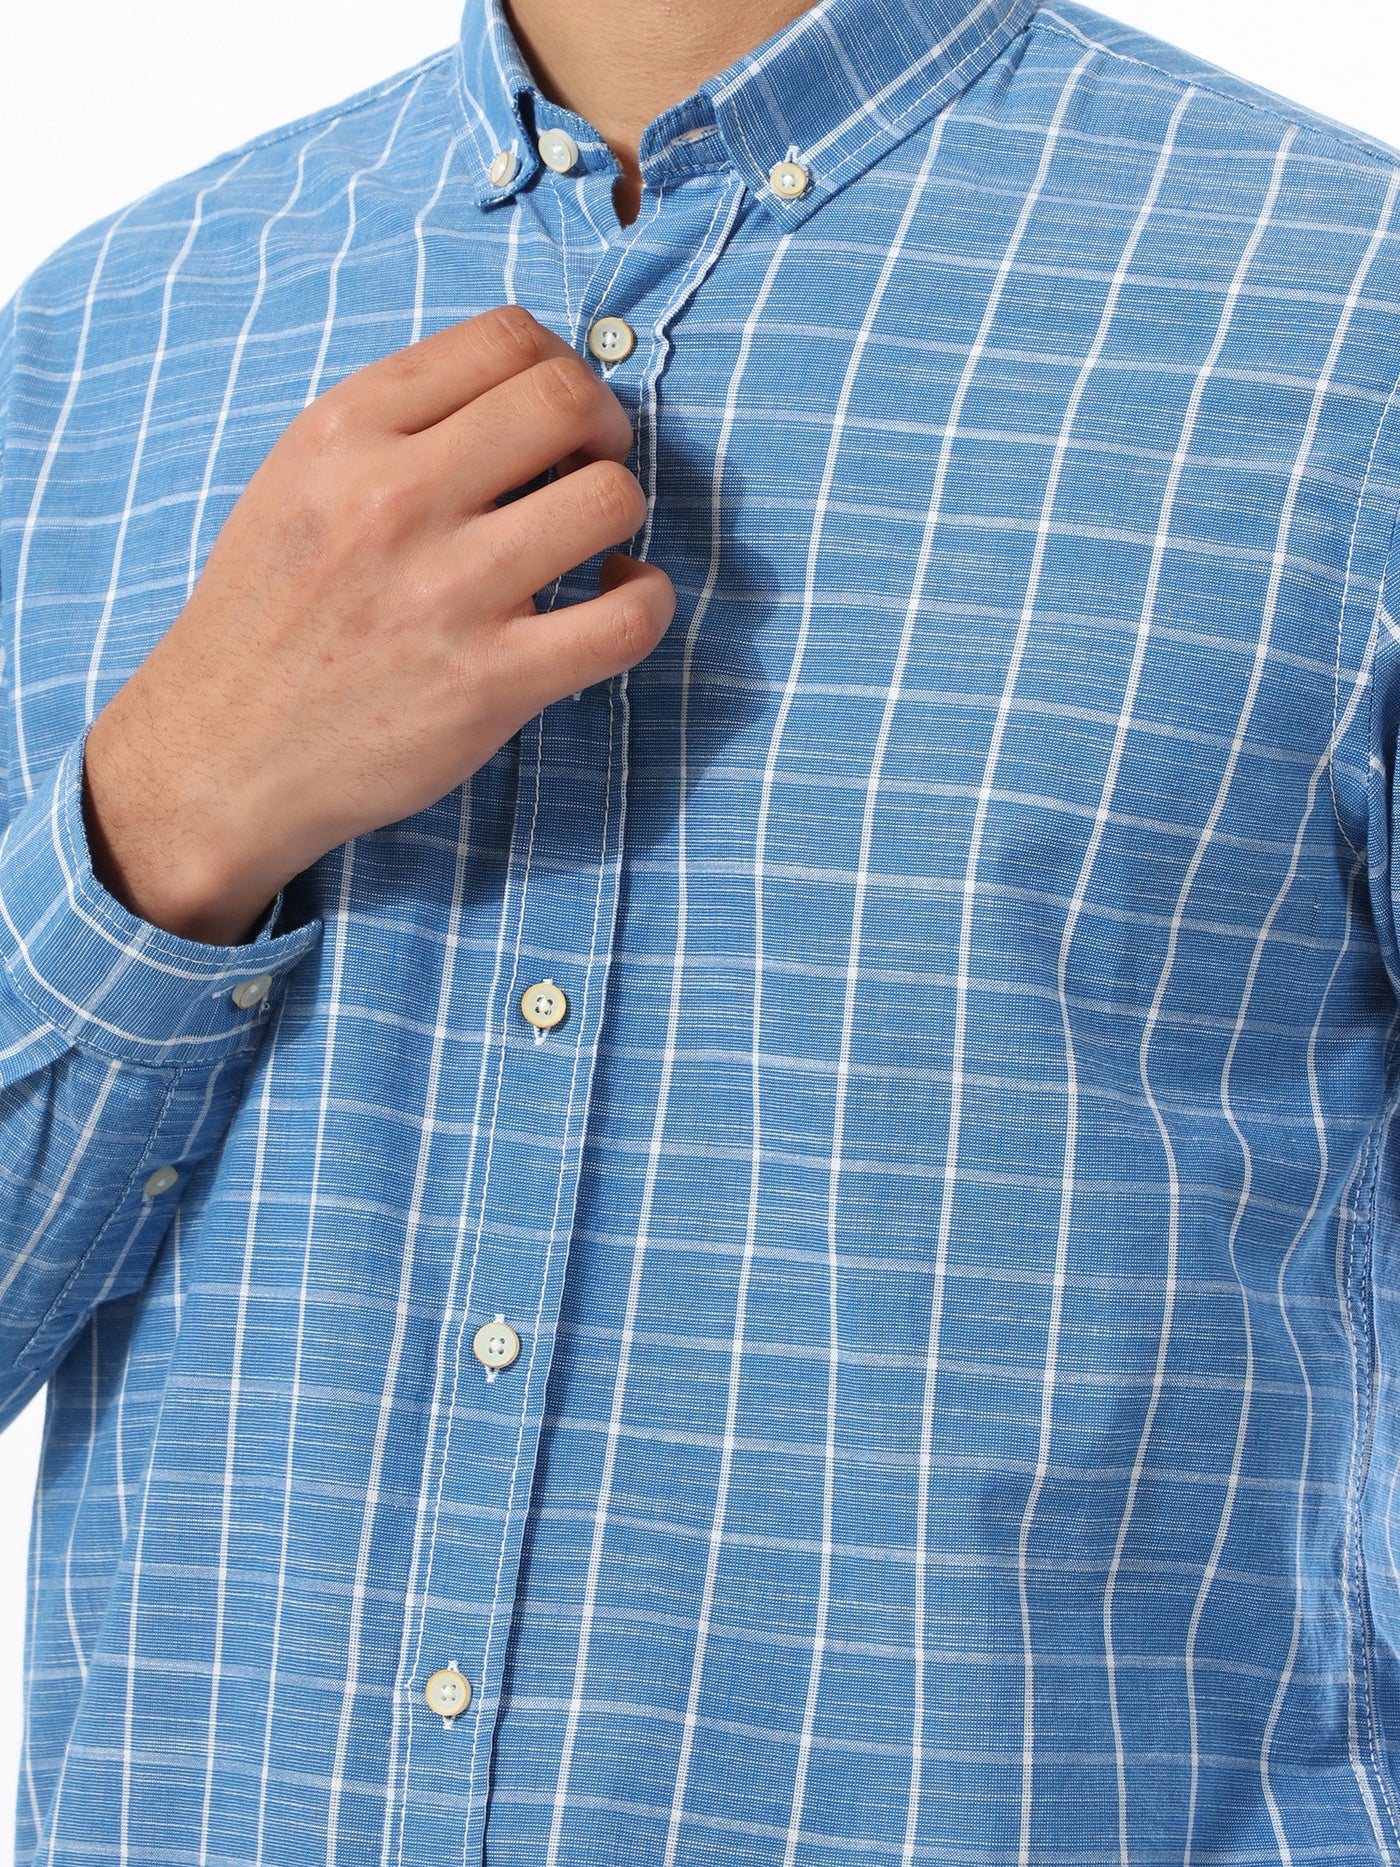 Shirt - Long Sleeved - Checkered